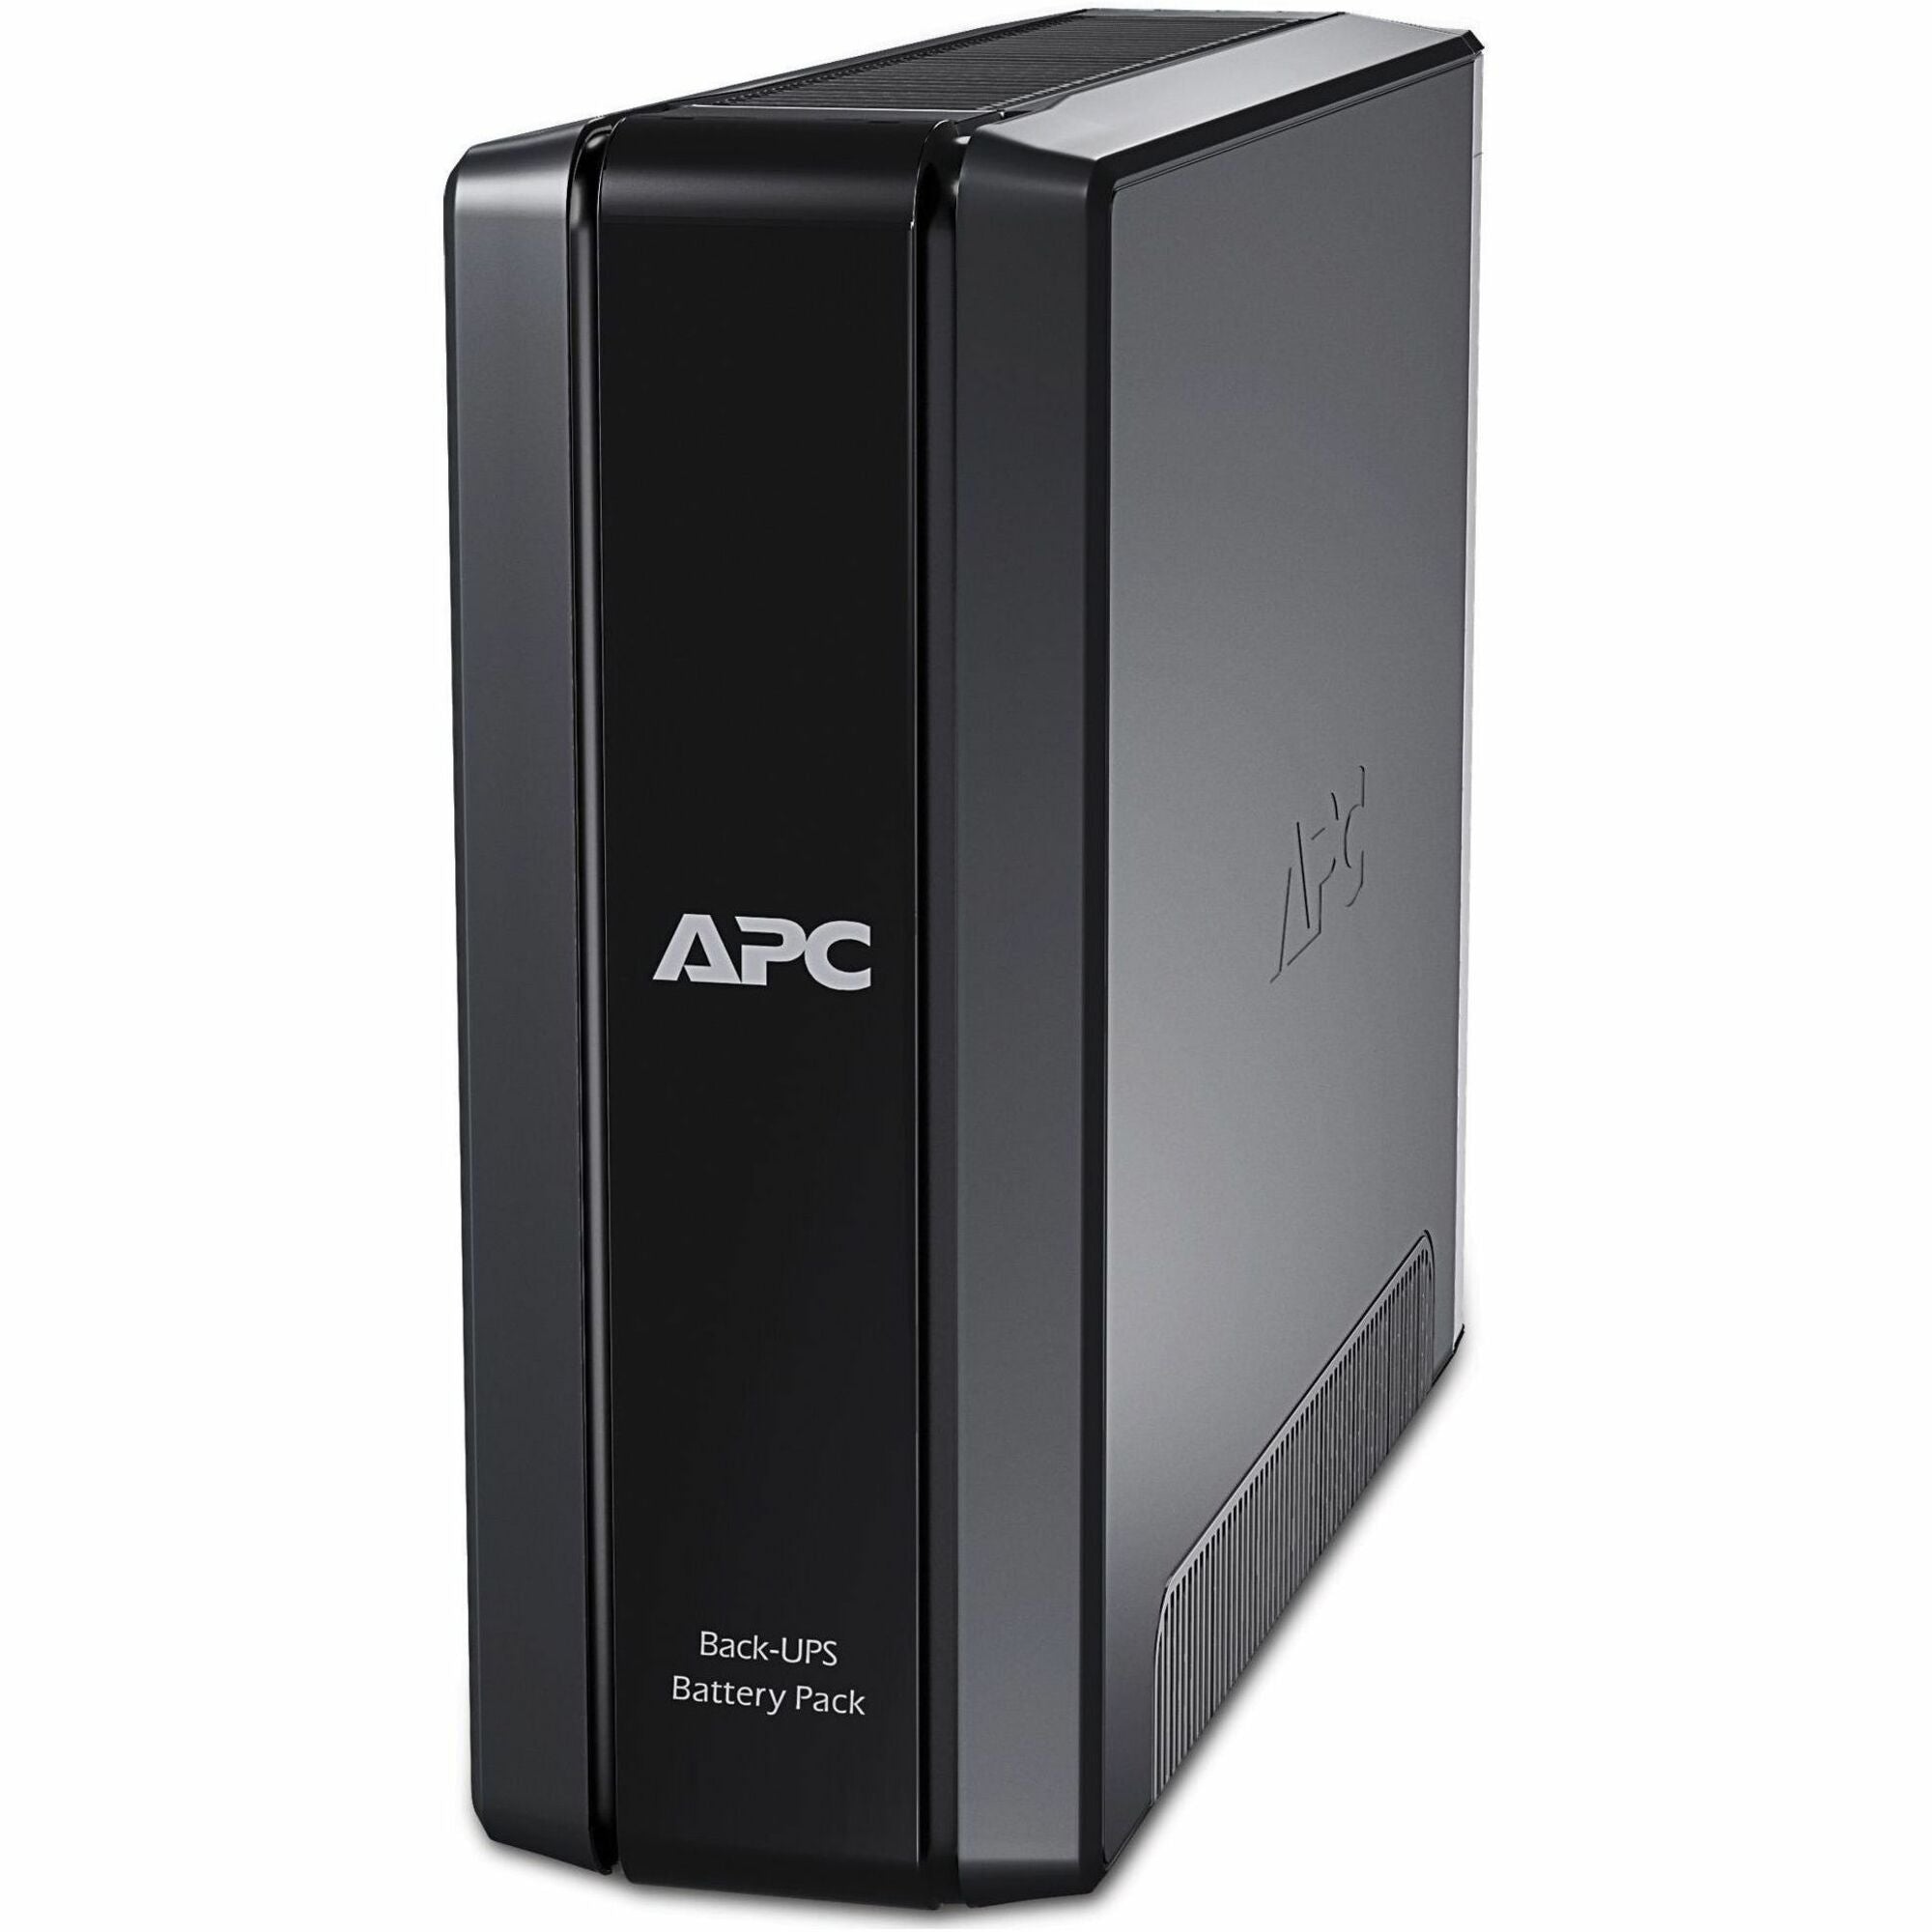 APC by Schneider Electric Back-UPS Pro External Battery Pack (for 1500VA Back-UPS Pro models) - BR24BPG